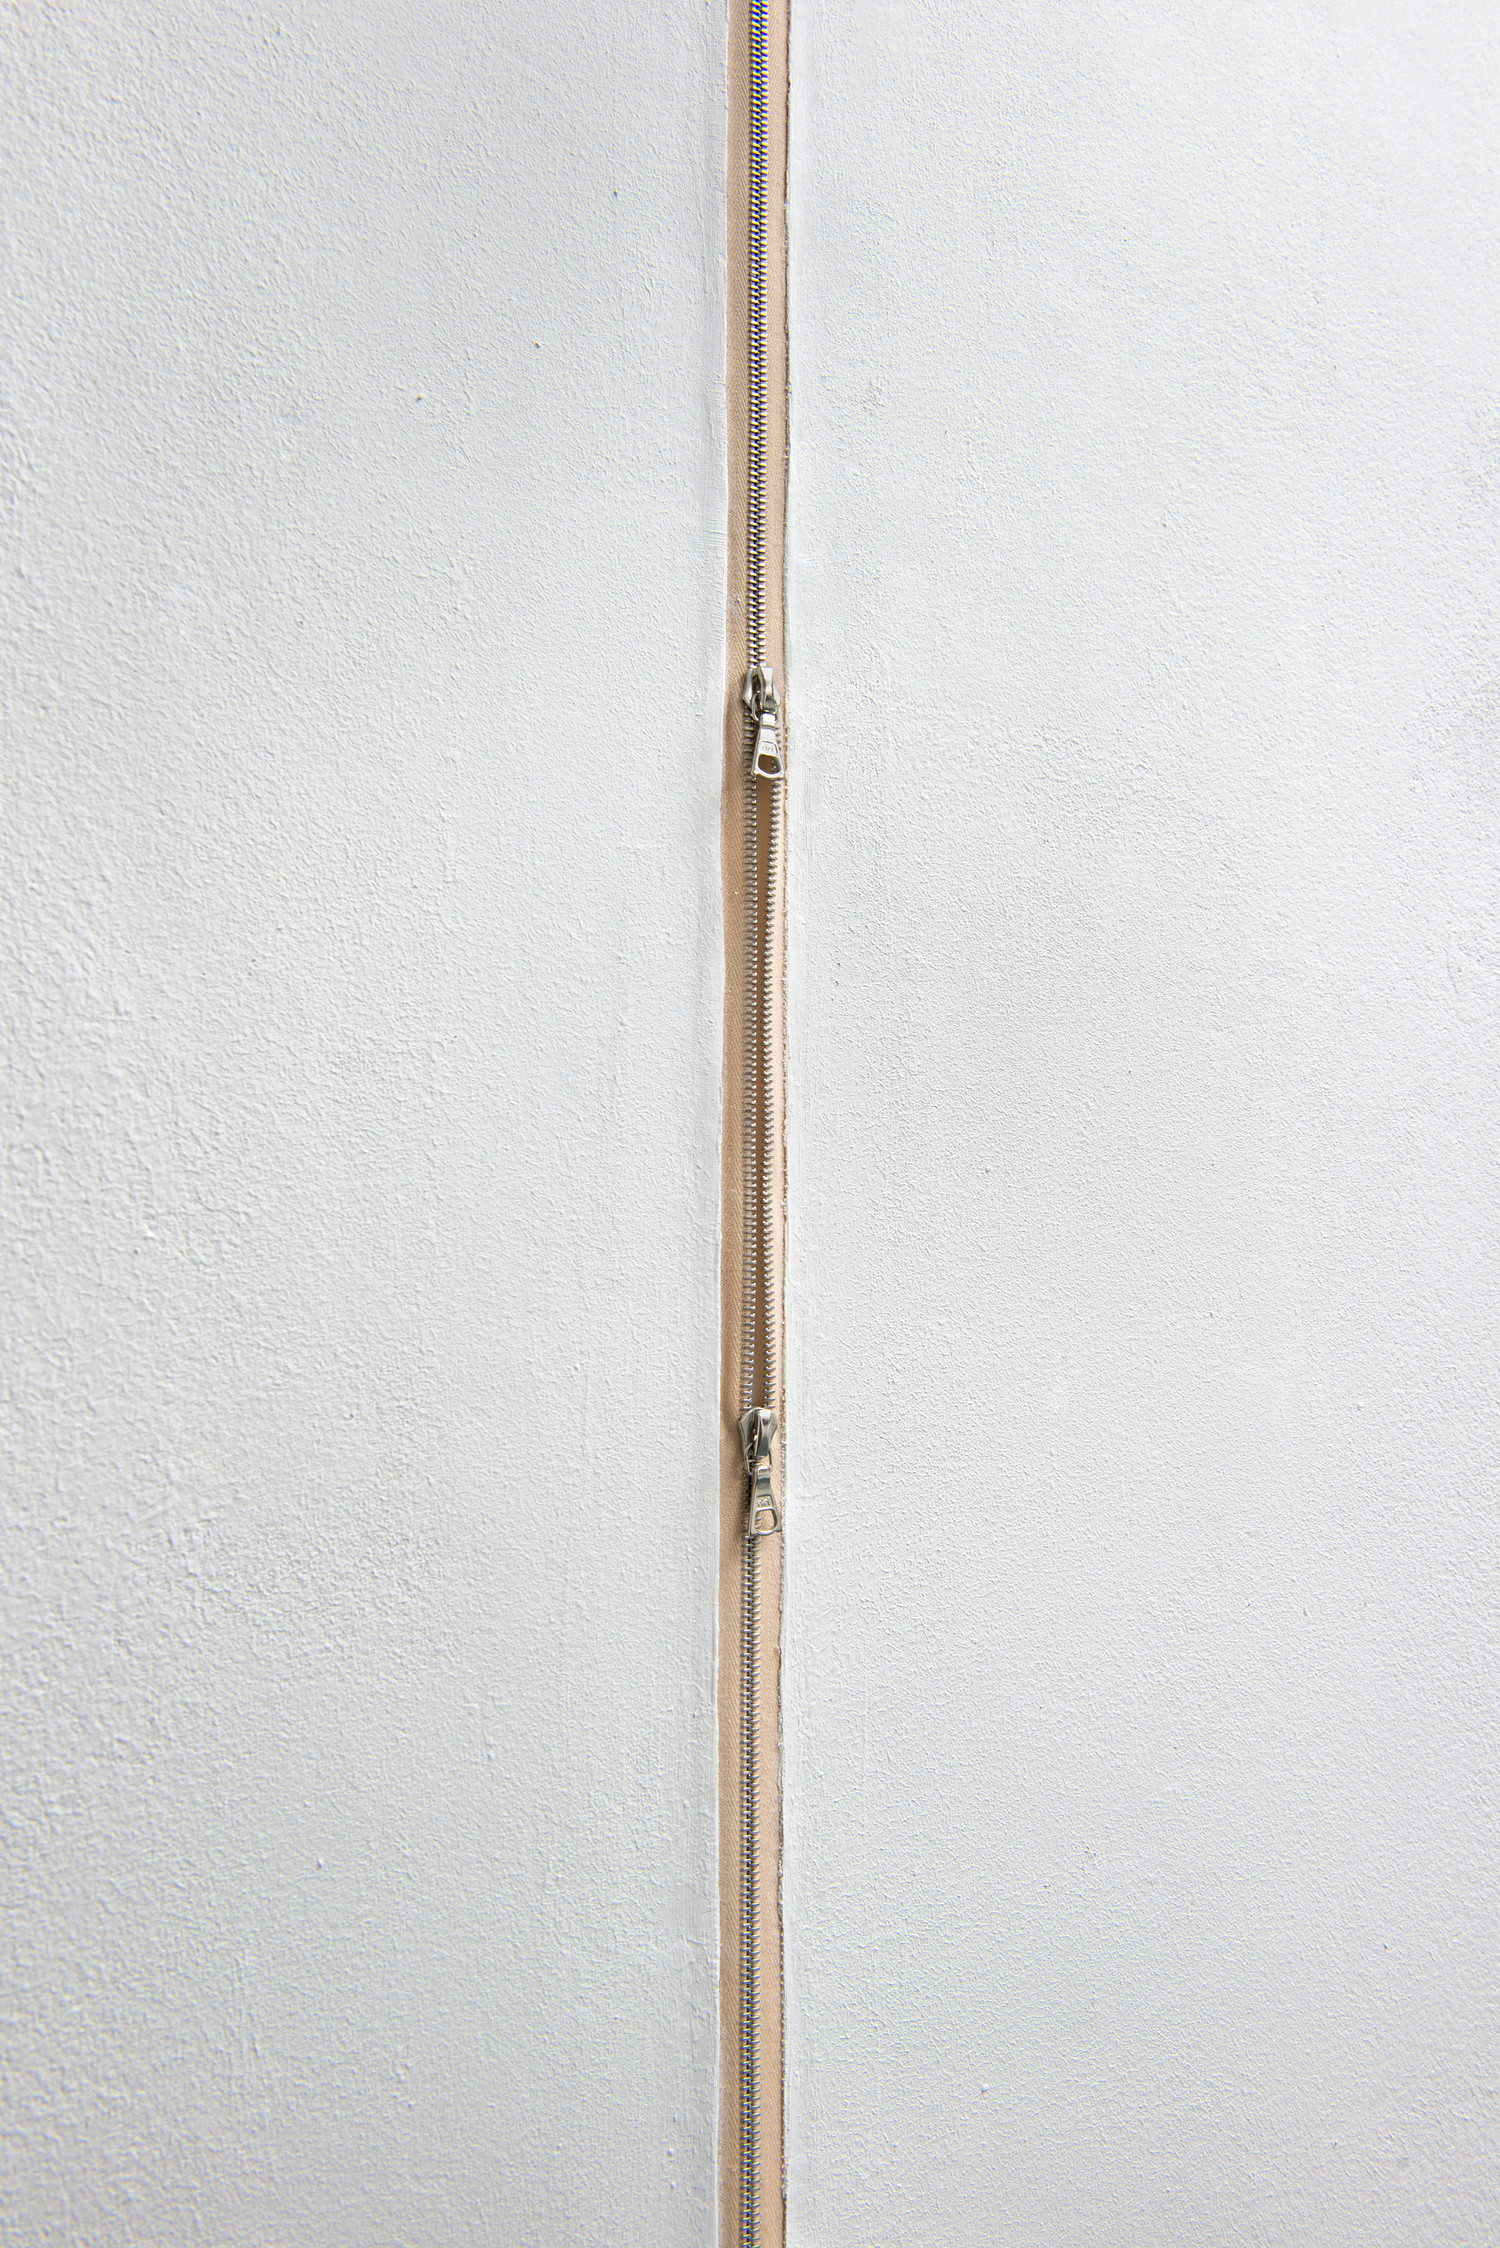 Zipper H116.5 (detail), 2020 — © Manon Wertenbroek